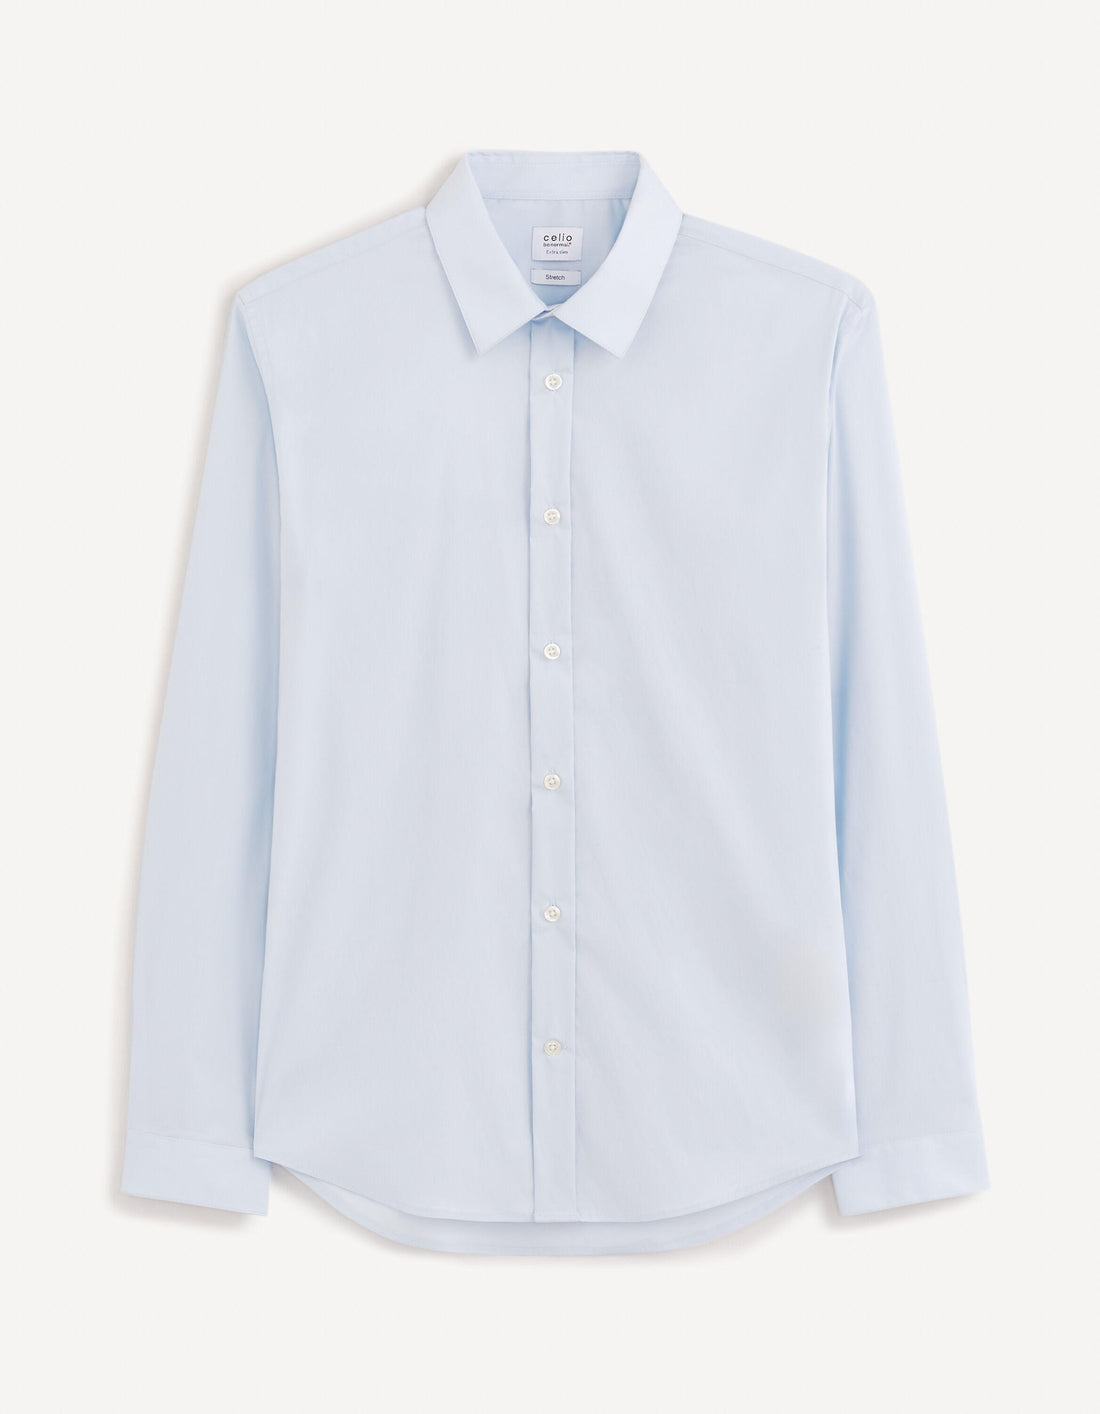 Extra Slim Stretch Cotton Shirt_VAXAVIER_LIGHT BLUE 01_02